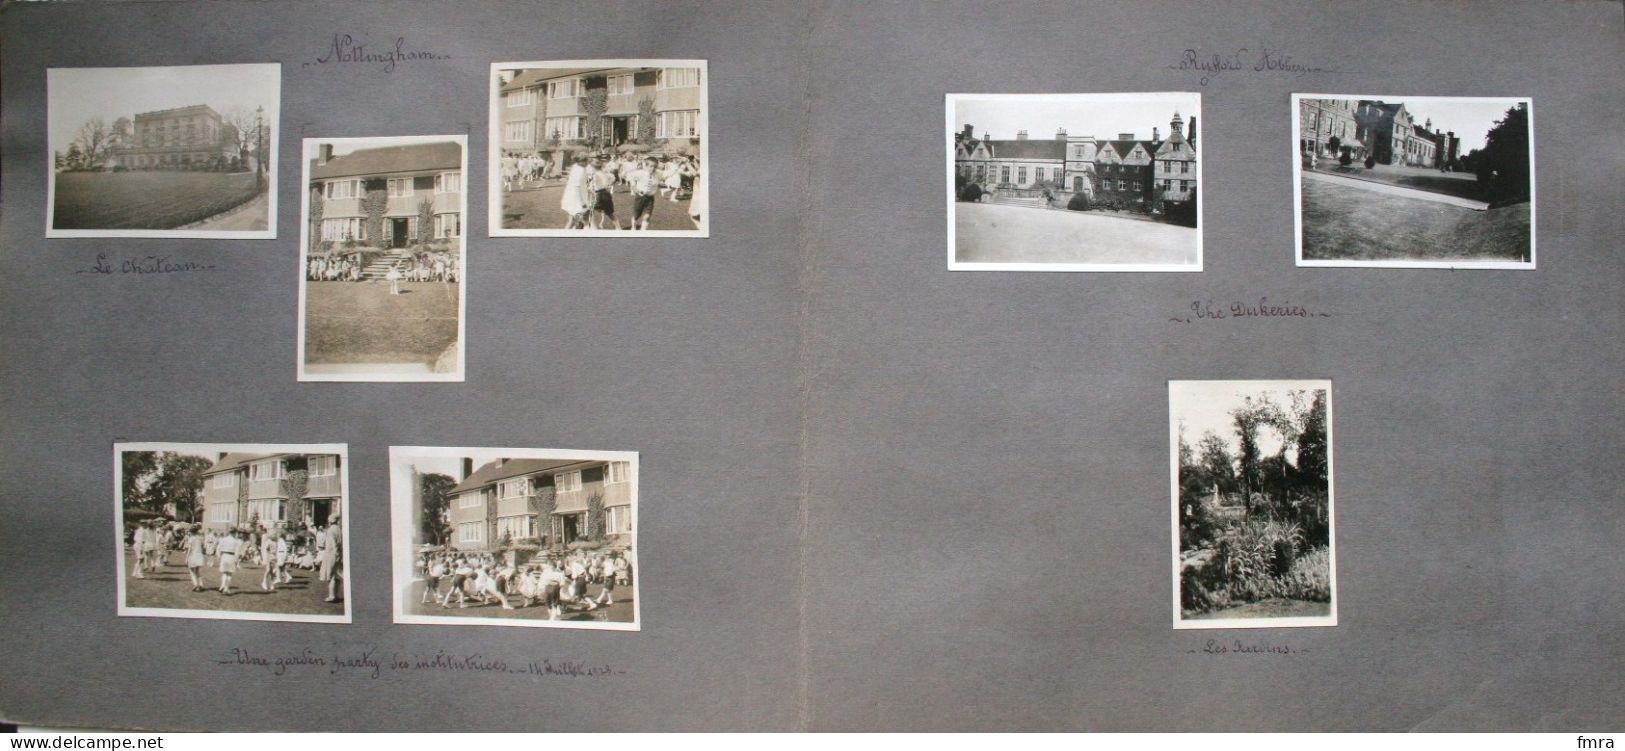 England 1928 – NOTTINGHAM  – Rufford Abbey – Londres – Ensemble de 66 photos 8,8 x 6 cm (***à voir 11 scans***) /GP